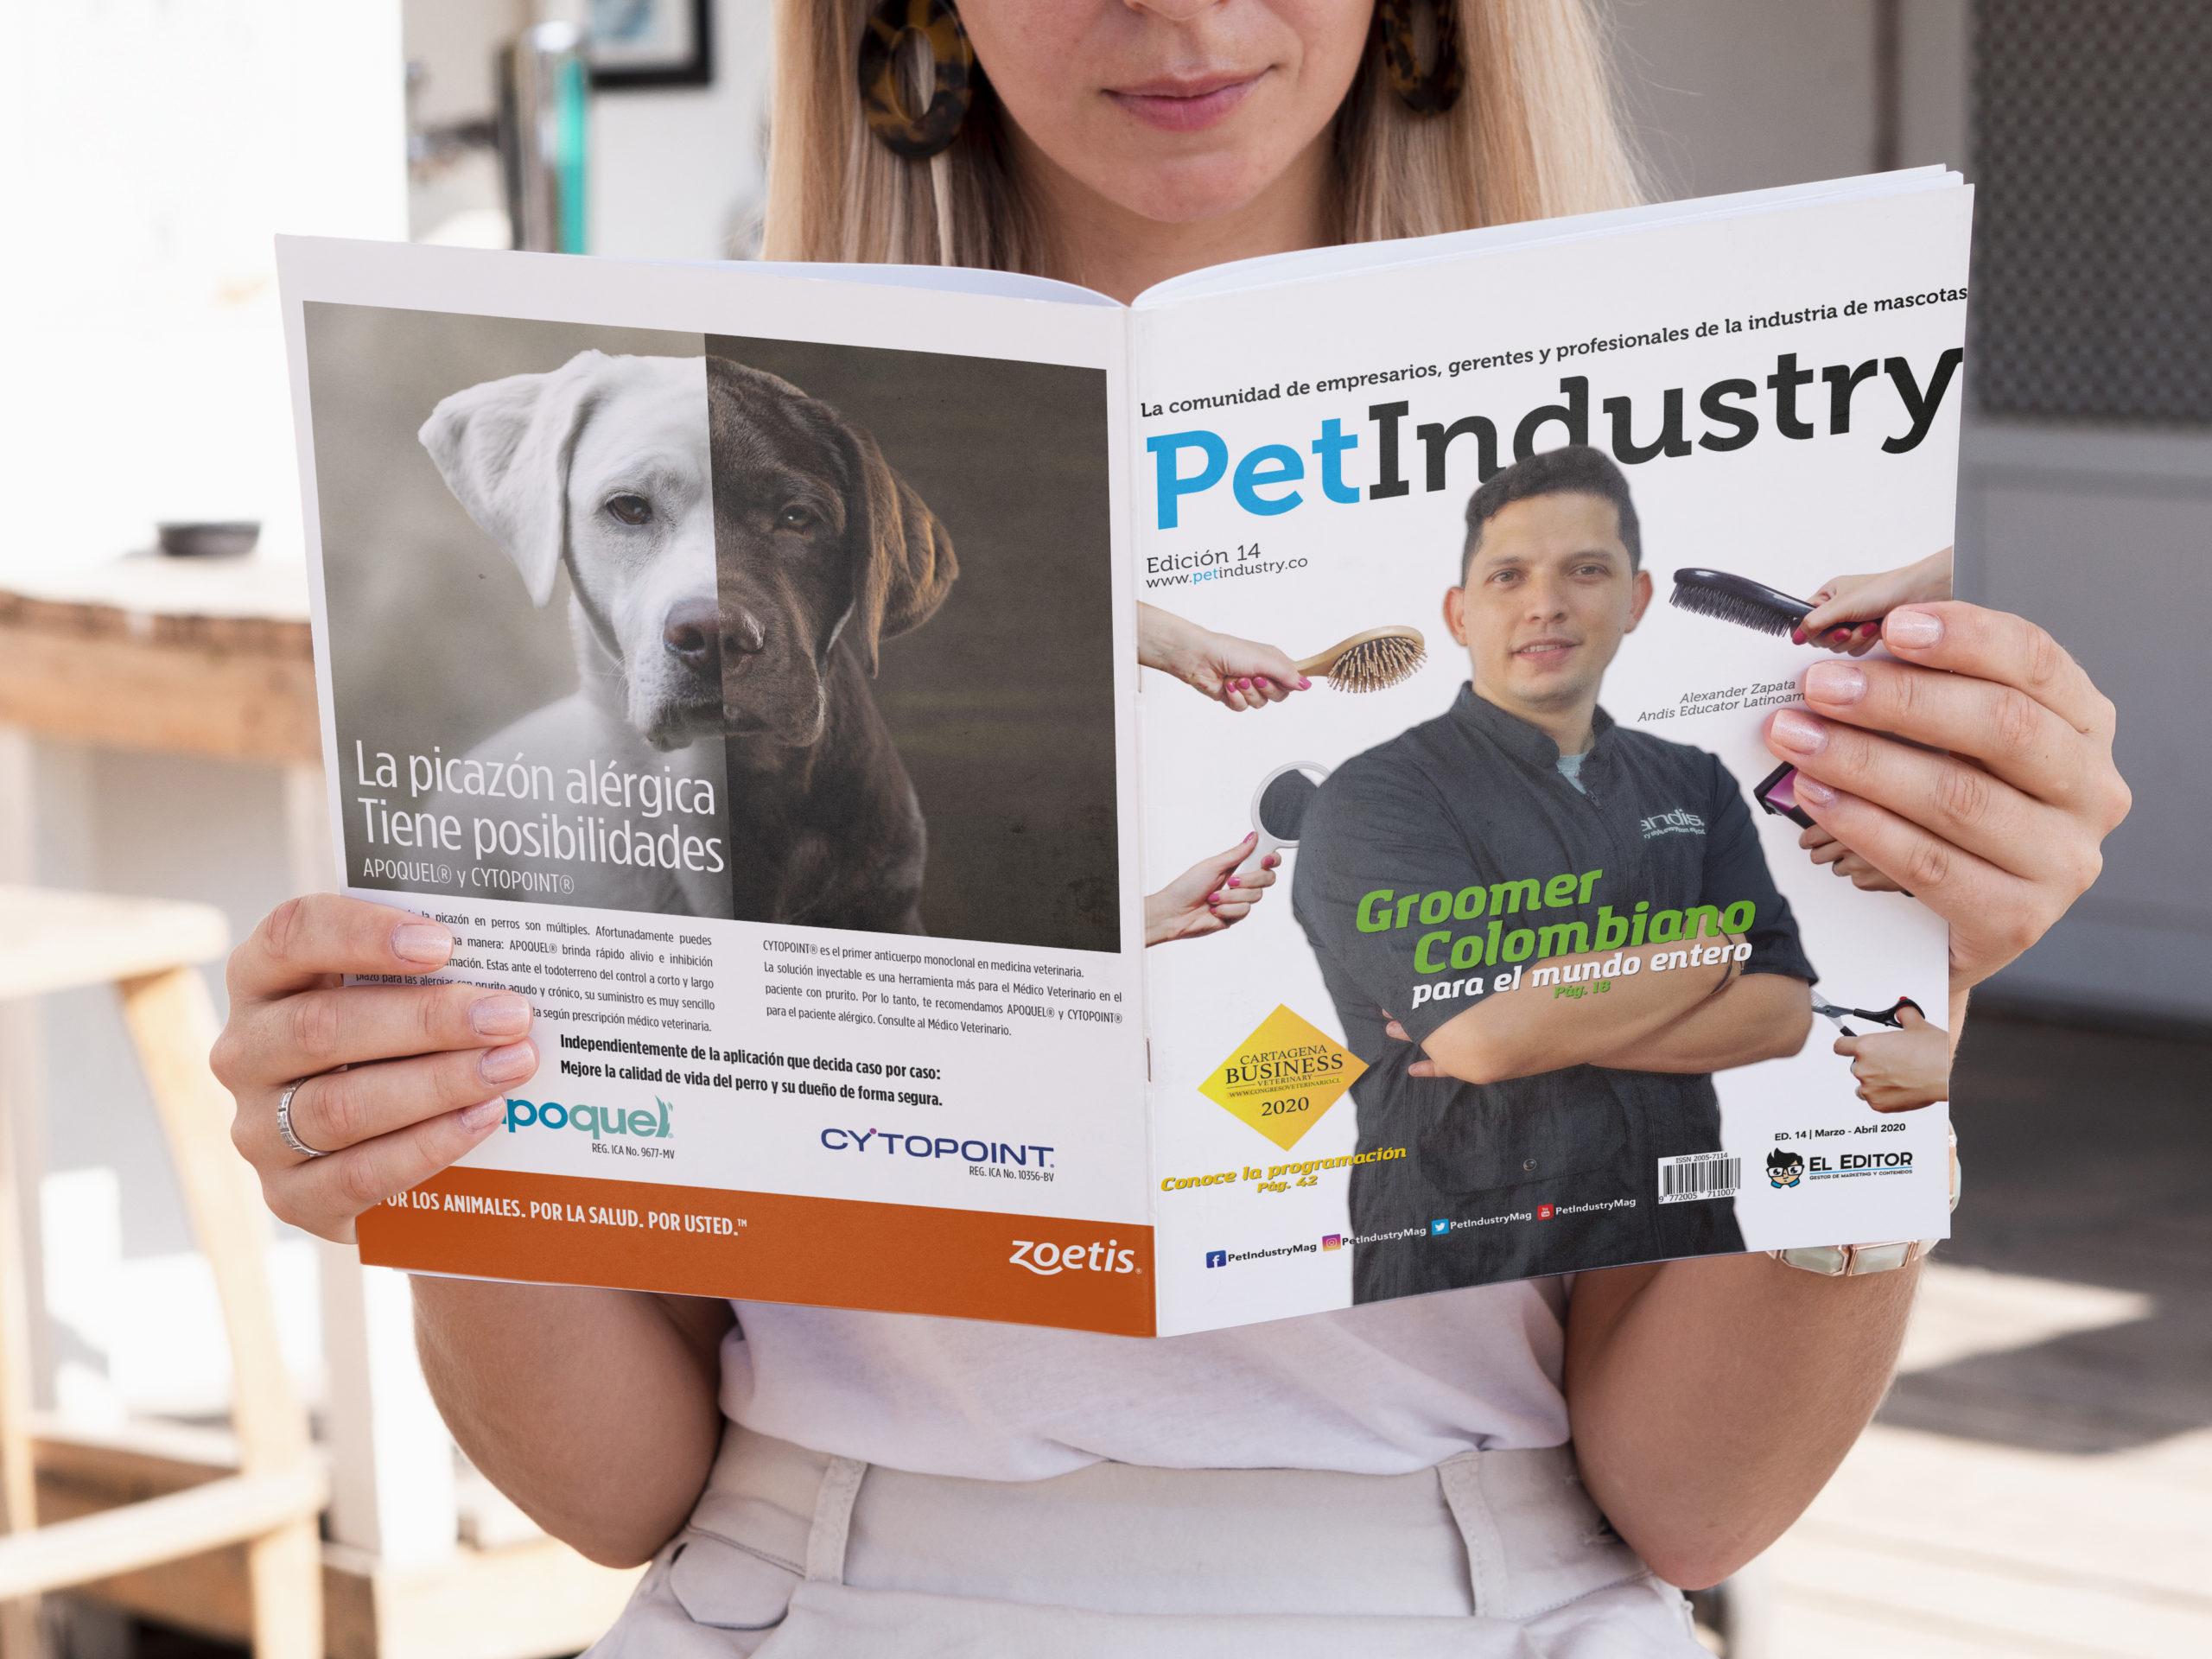  Pet Industry edición #14